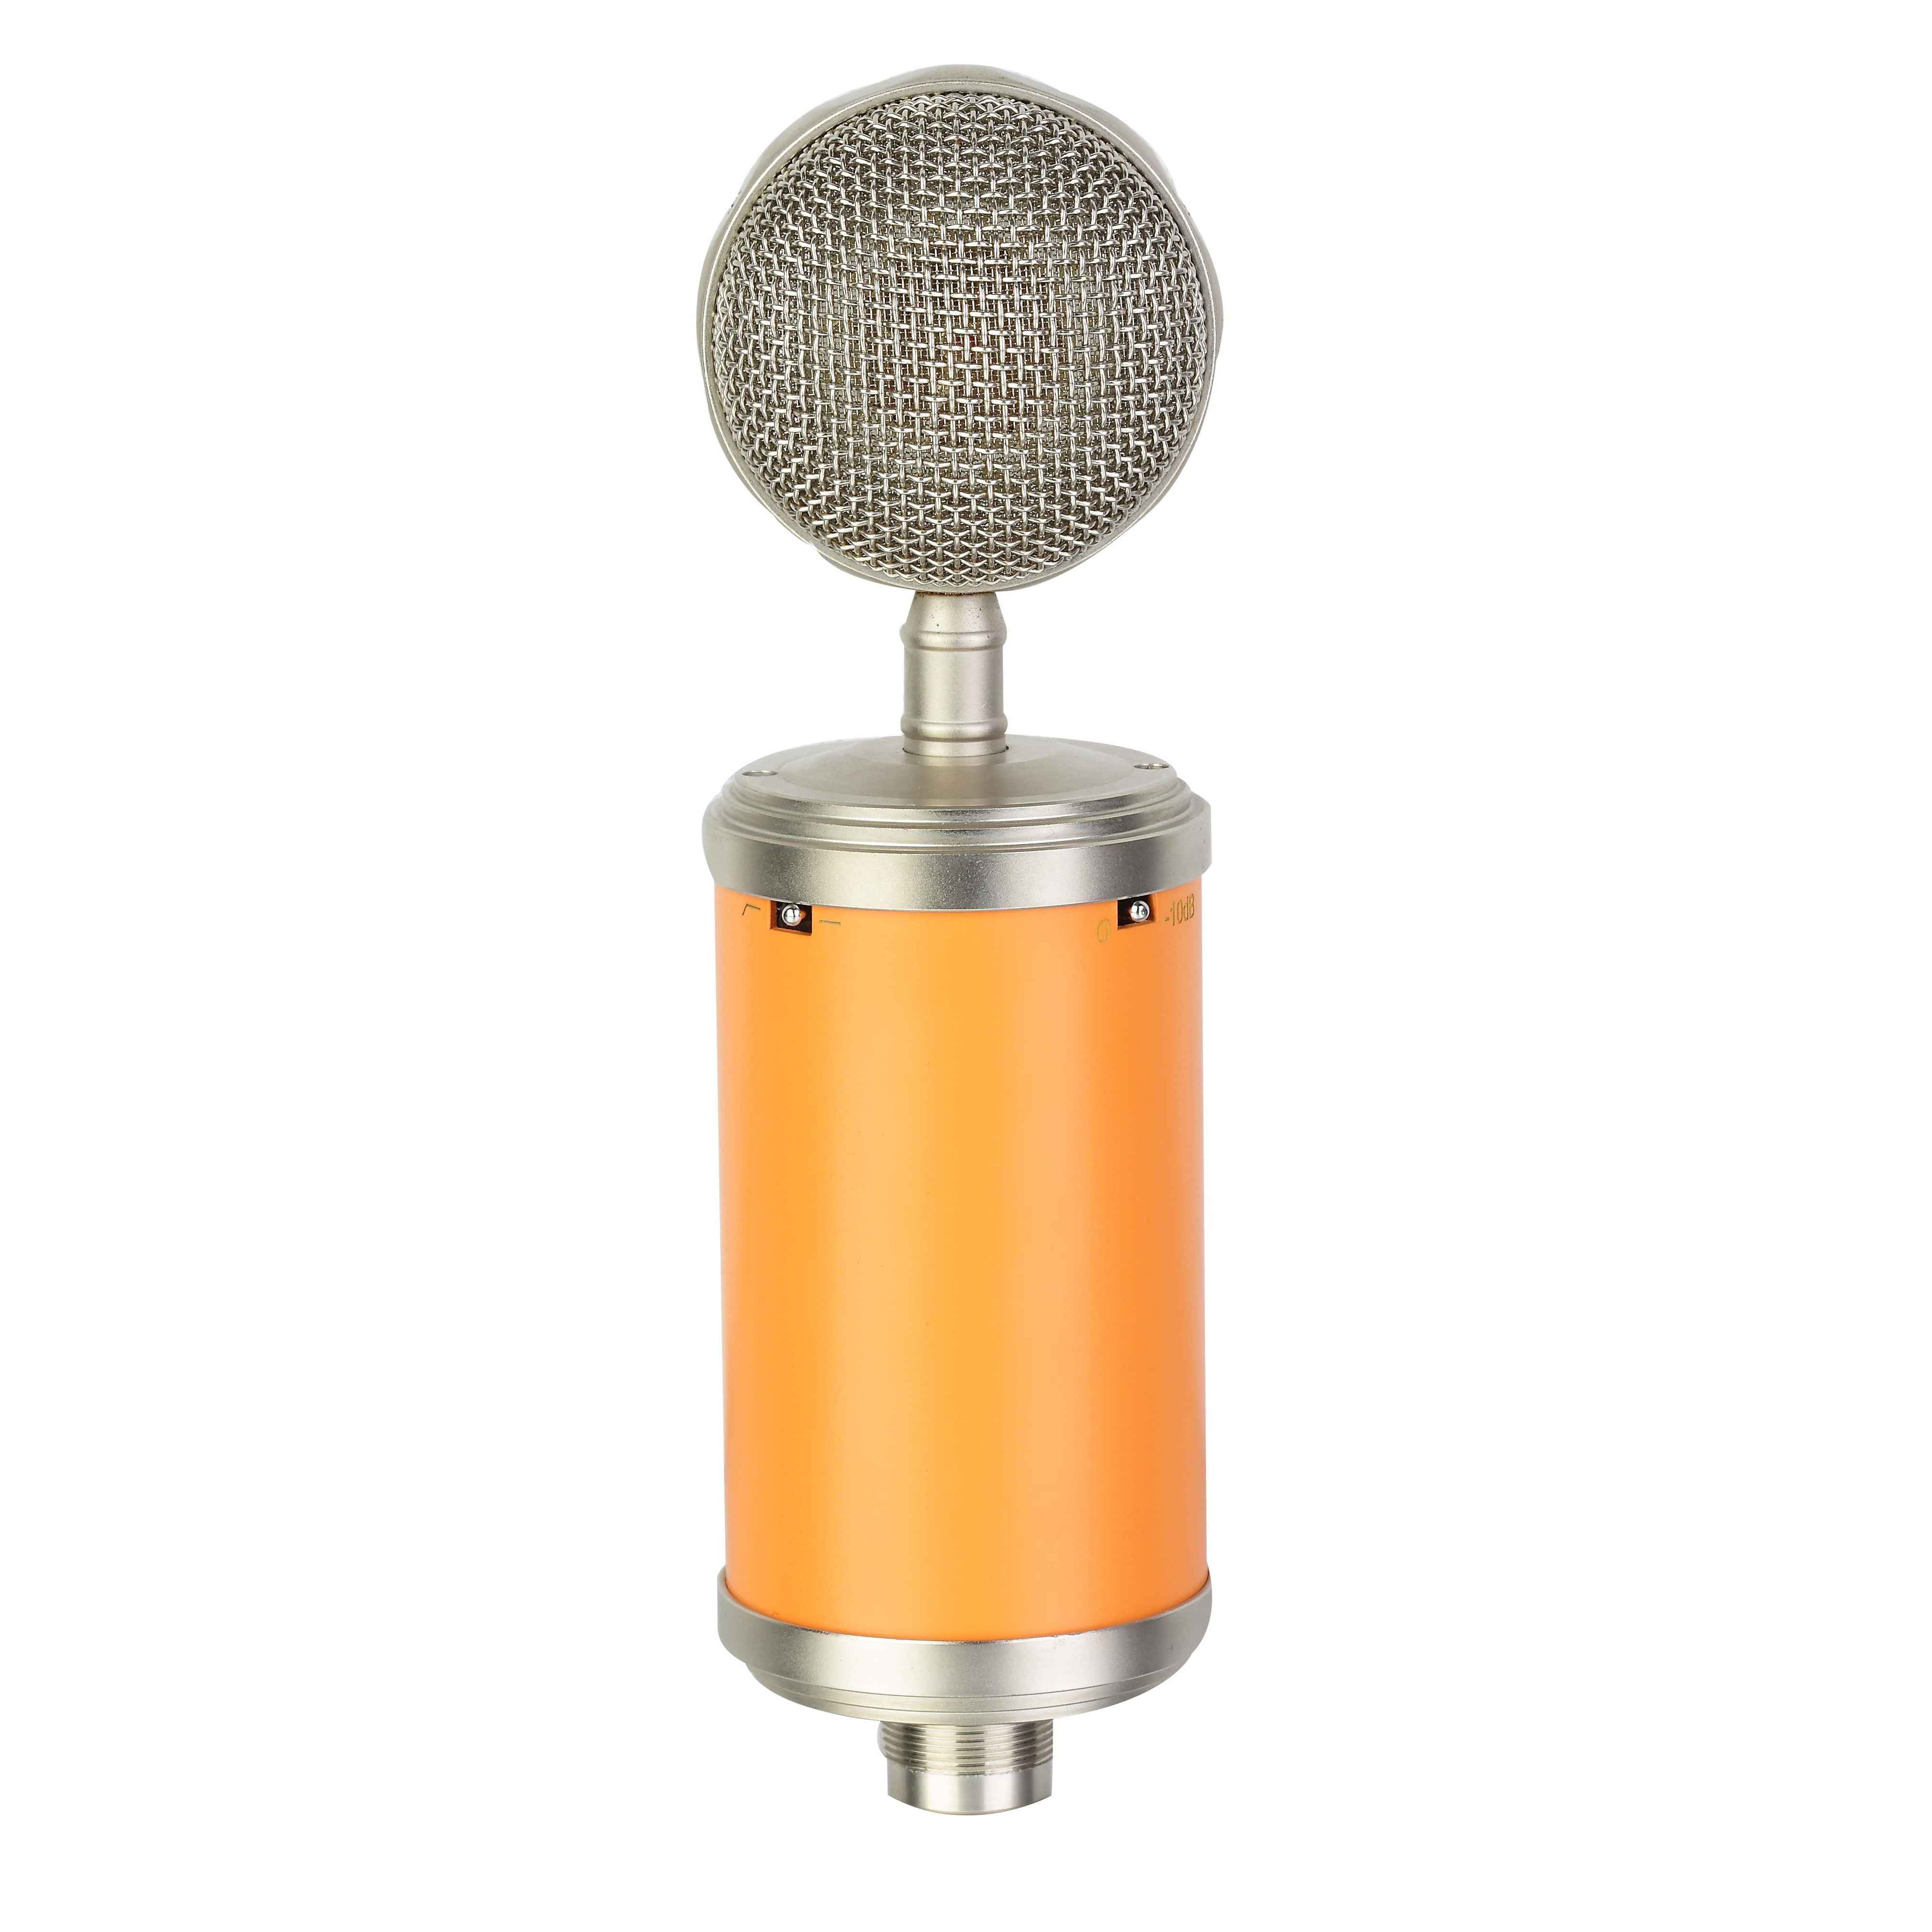 TCM002 Micrófono de condensador de tubo profesional